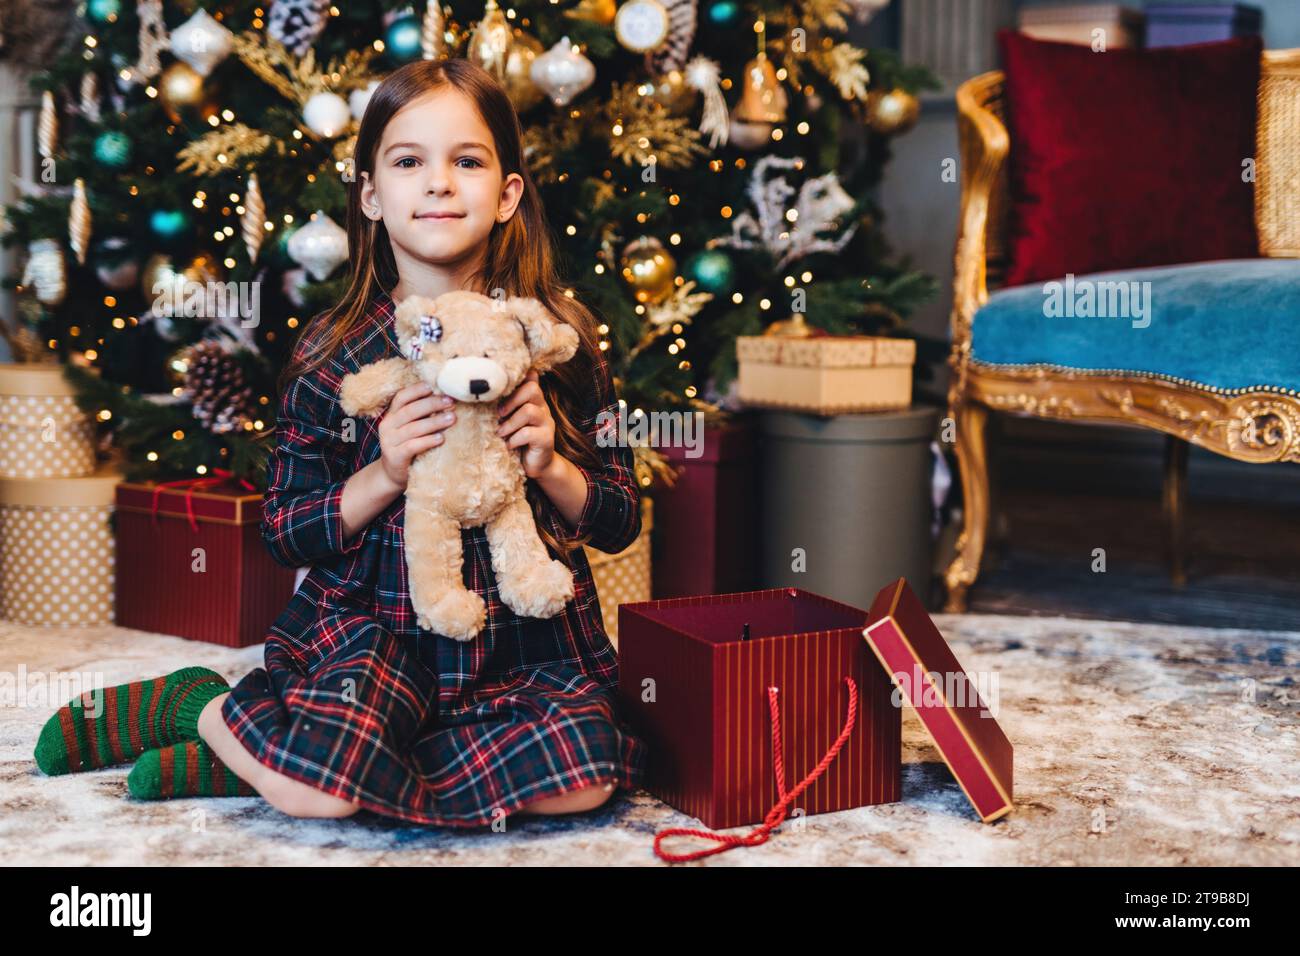 Zufriedenes Mädchen im karierten Pyjama mit einem Teddybären, einem Weihnachtsbaum und Geschenke in einem reich verzierten Zimmer Stockfoto